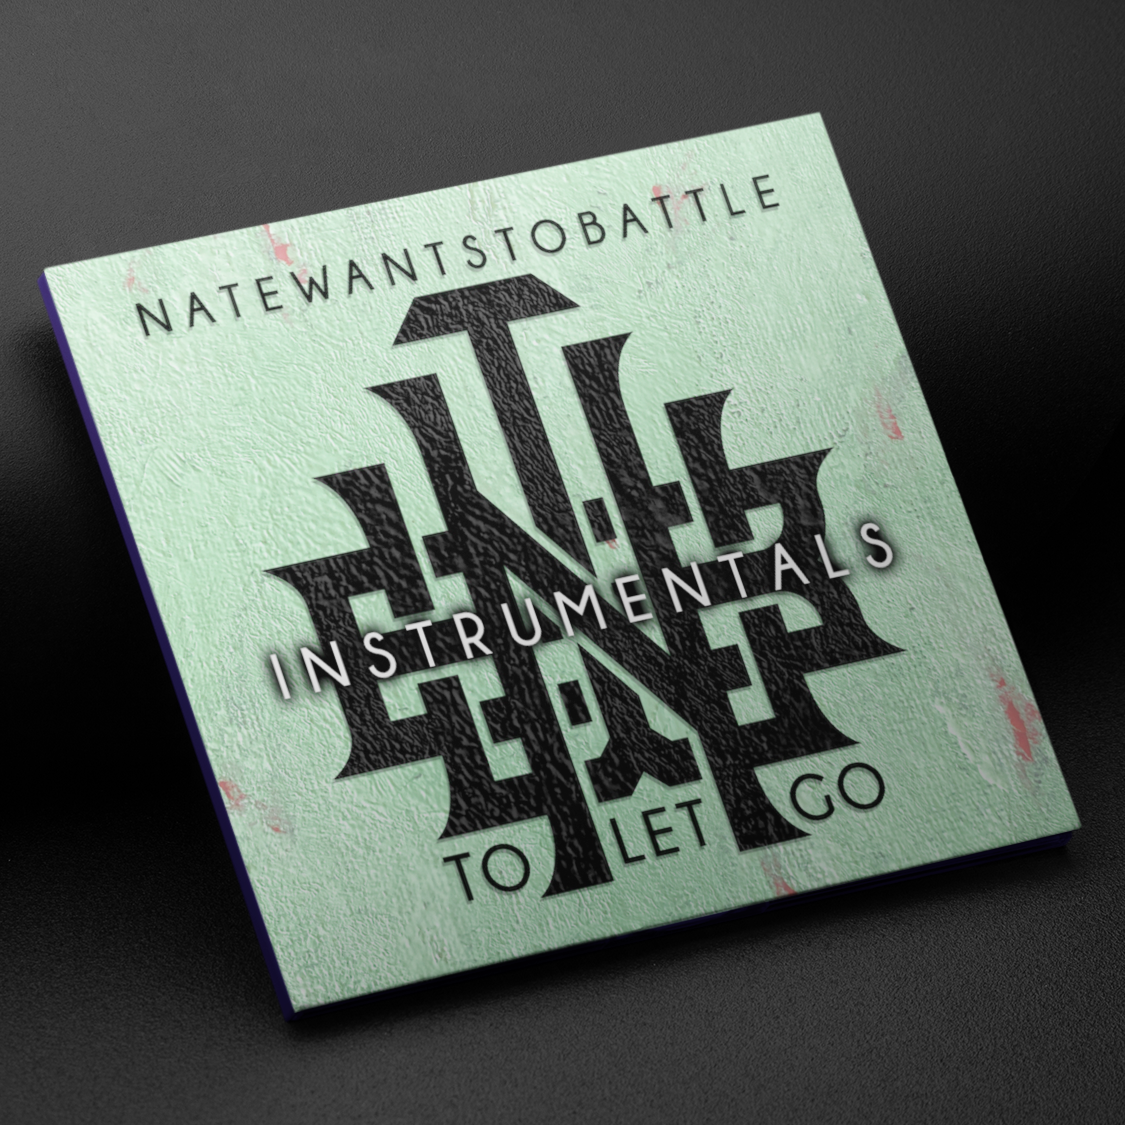 NateWantsToBattle - To Let Go INSTRUMENTALS